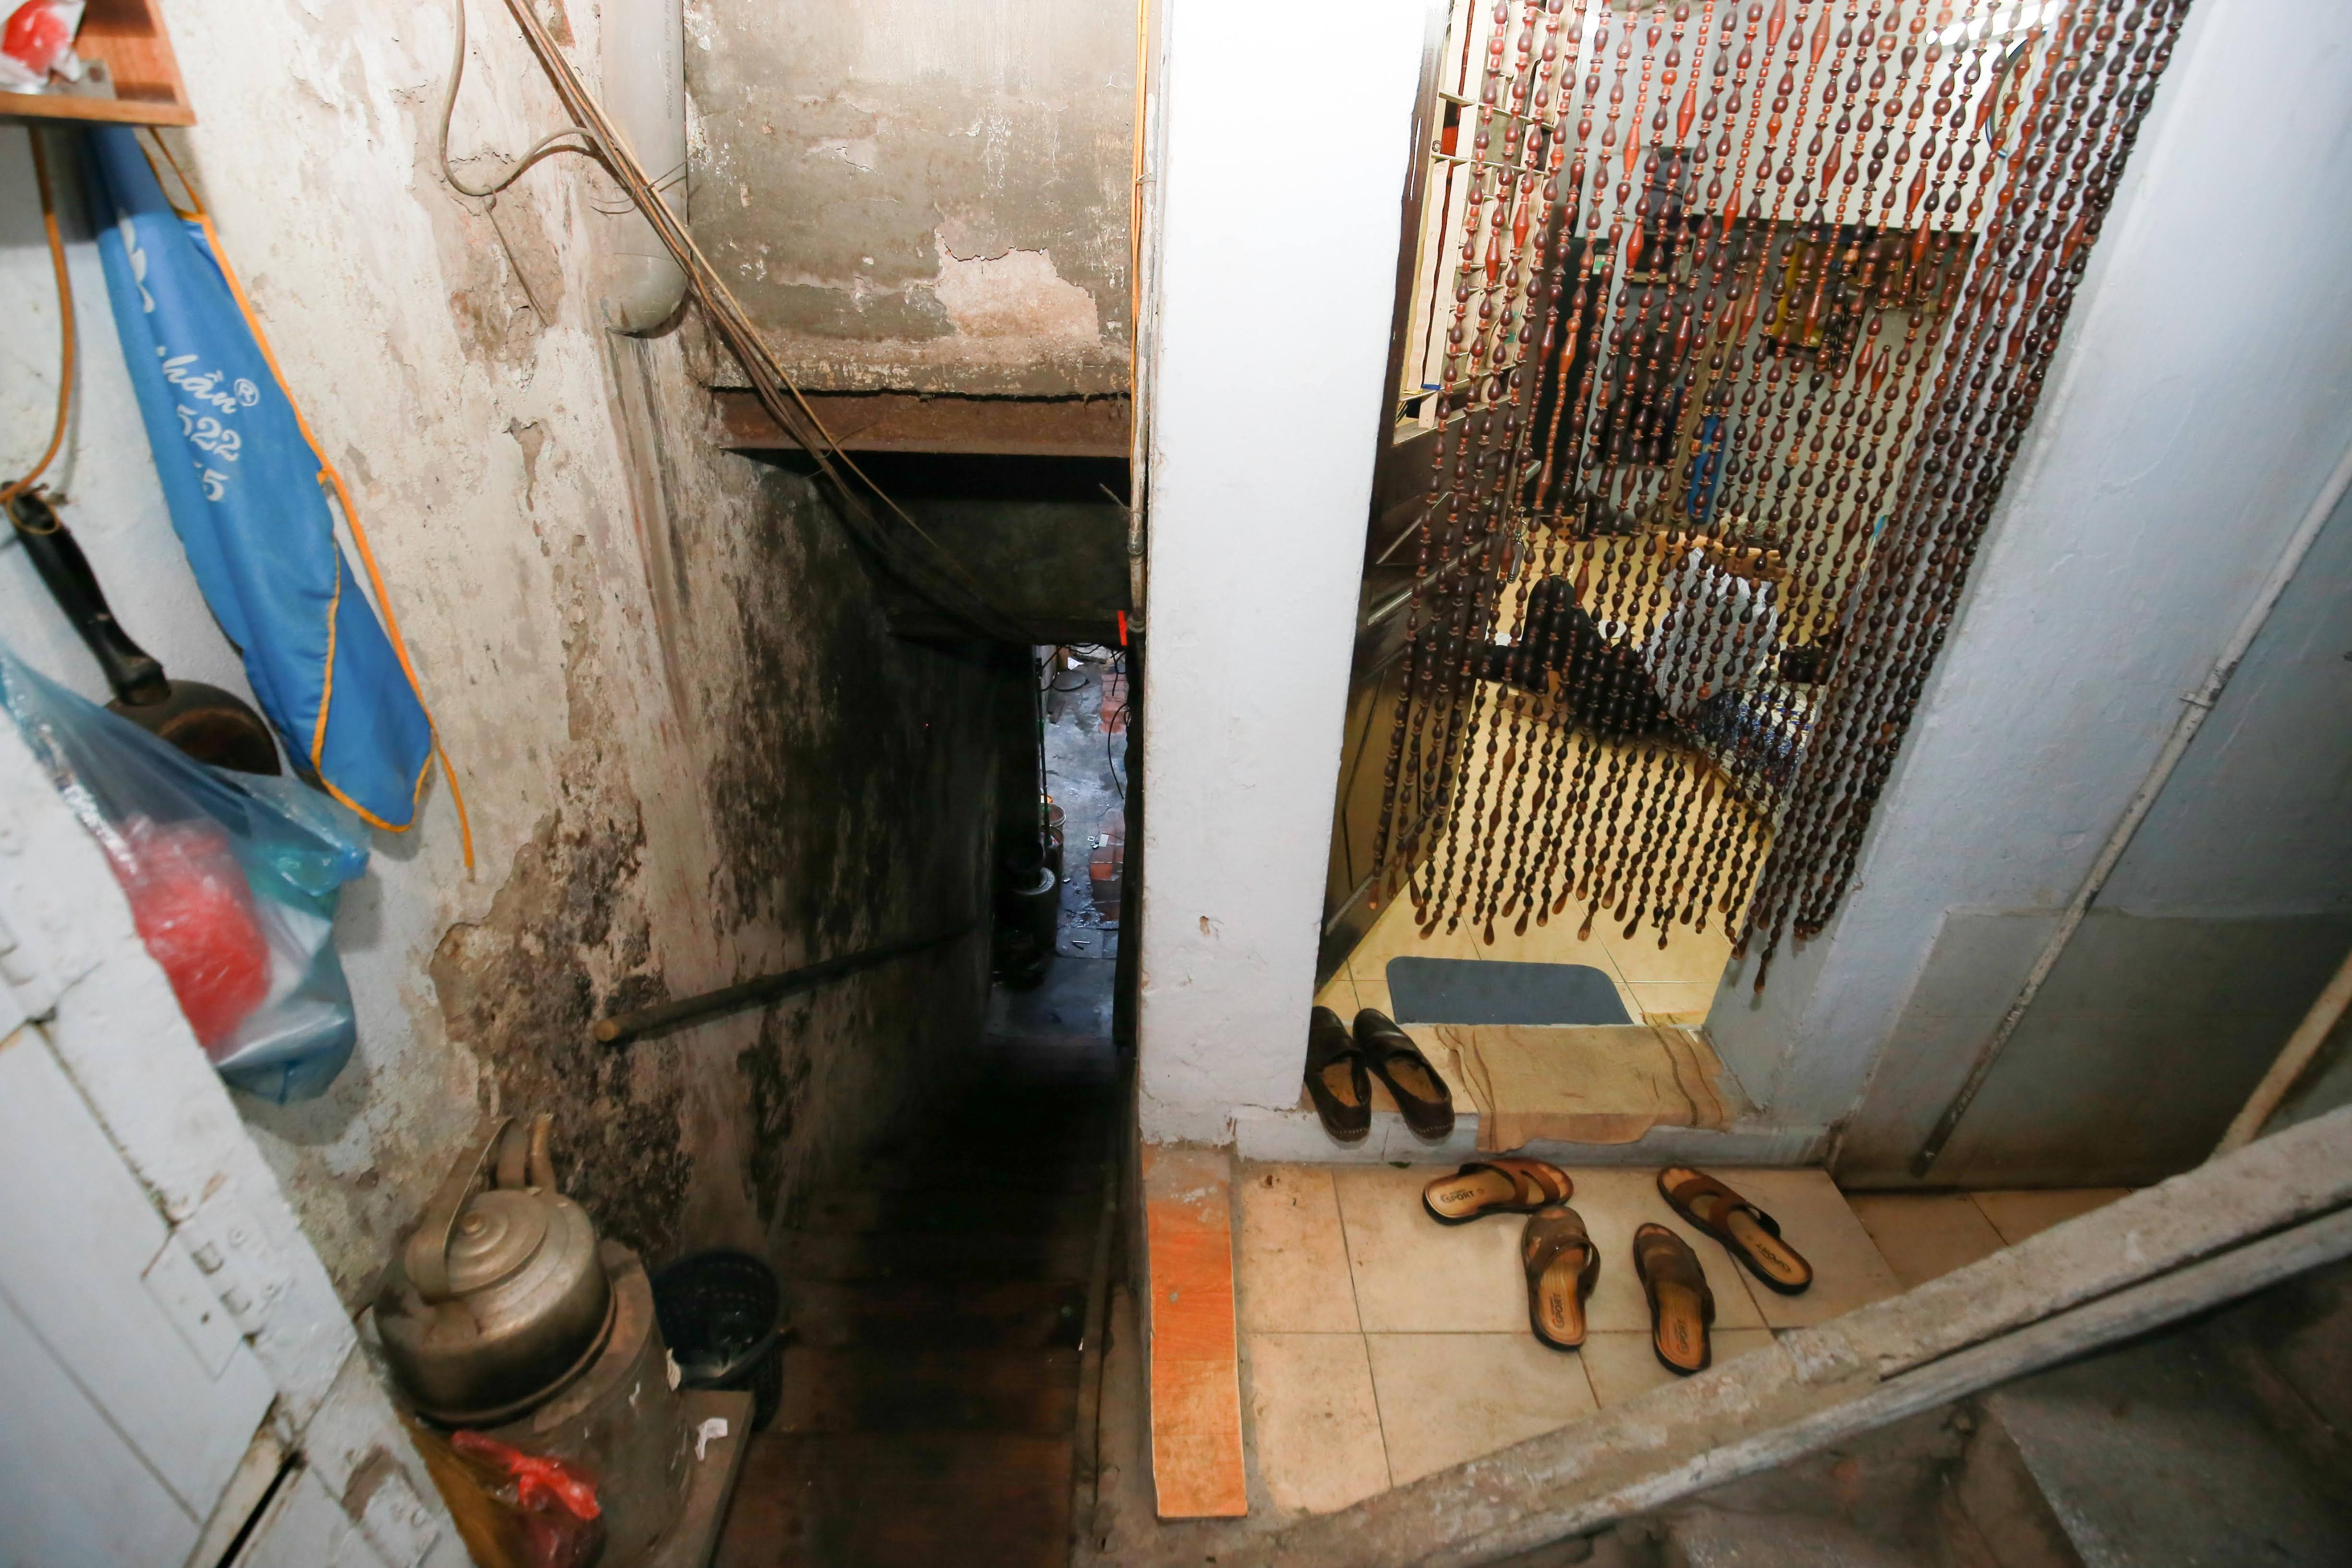 Một đêm trong nhà đất vàng 16m2 ở Hà Nội: 70 người chung một nhà vệ sinh